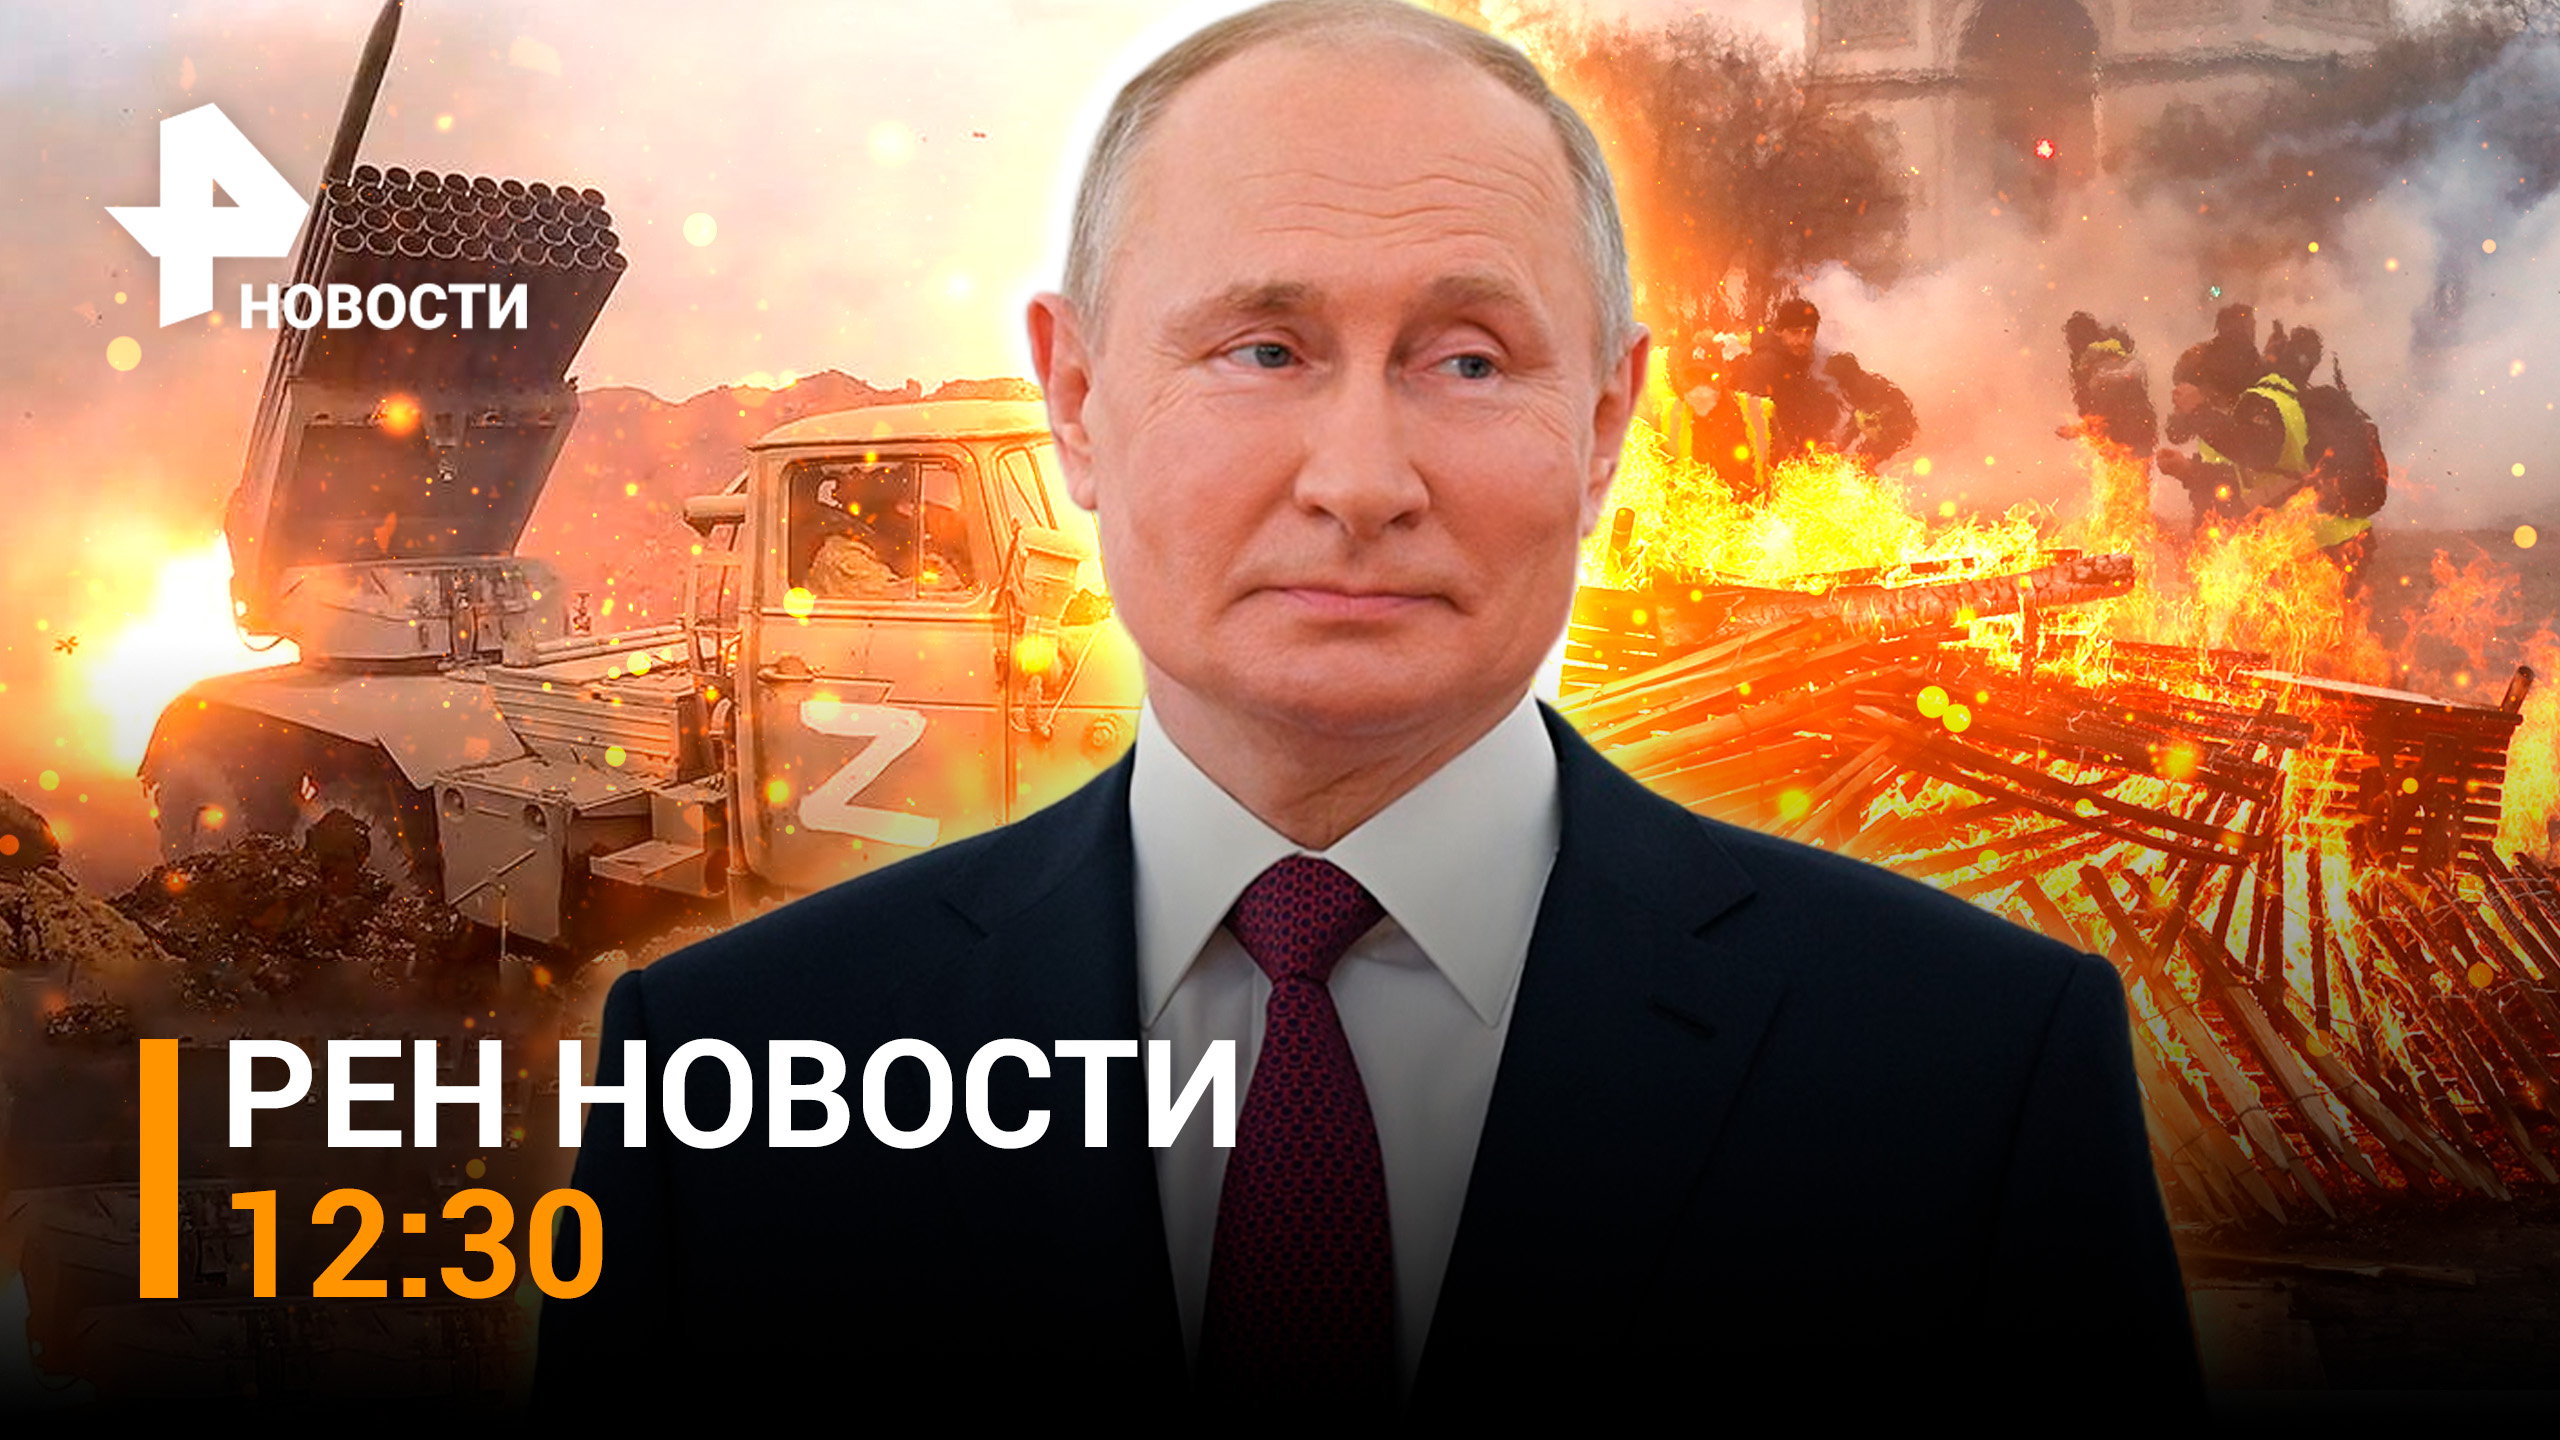 Путин в Мариуполе: первая поездка на Донбасс и визит в командный центр СВО / РЕН НОВОСТИ 19.03 12:30